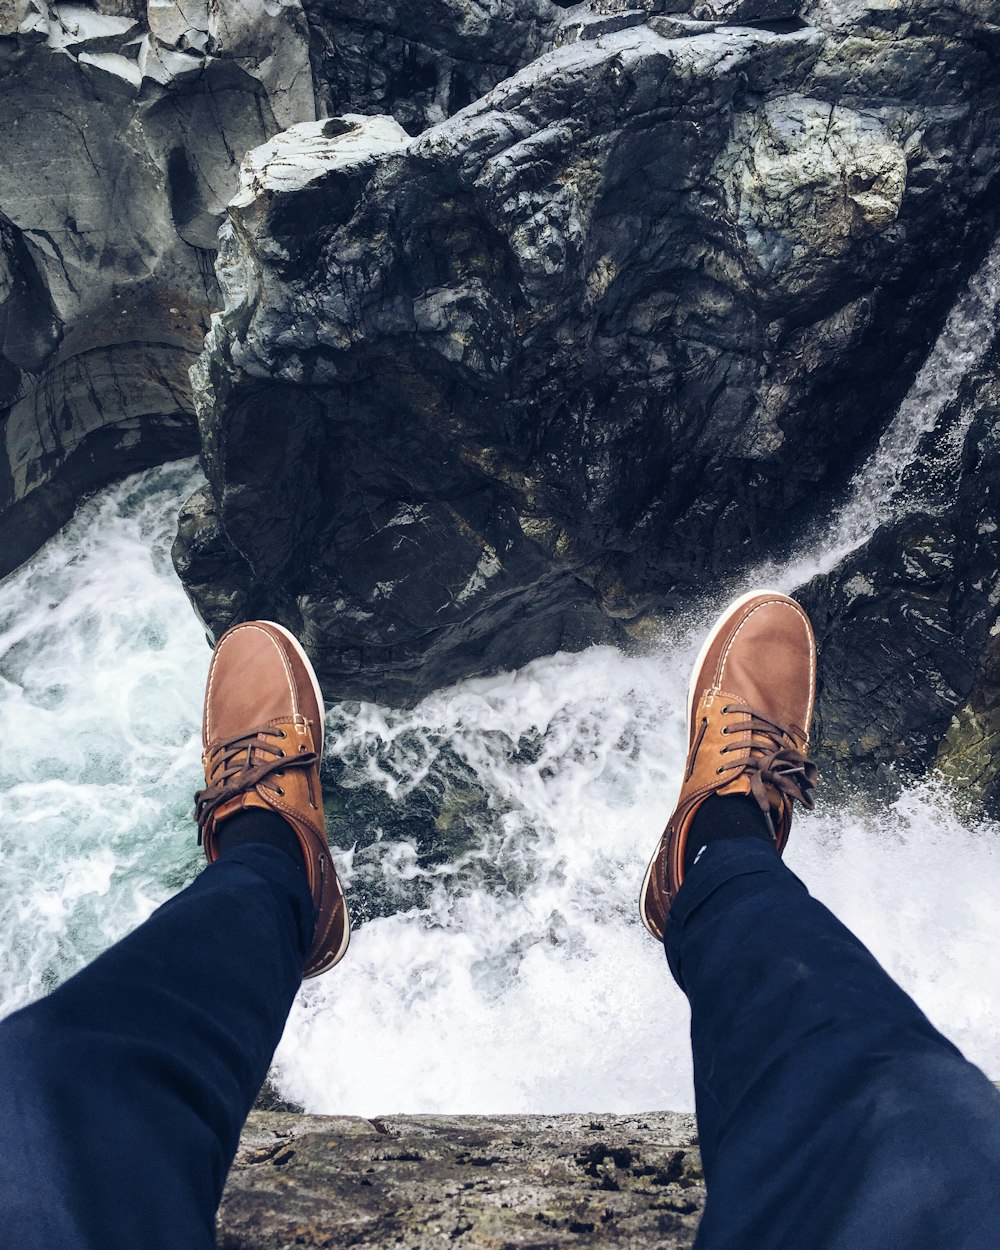 바위 가장자리에 앉아 흐르는 물의 사진을 찍는 사람